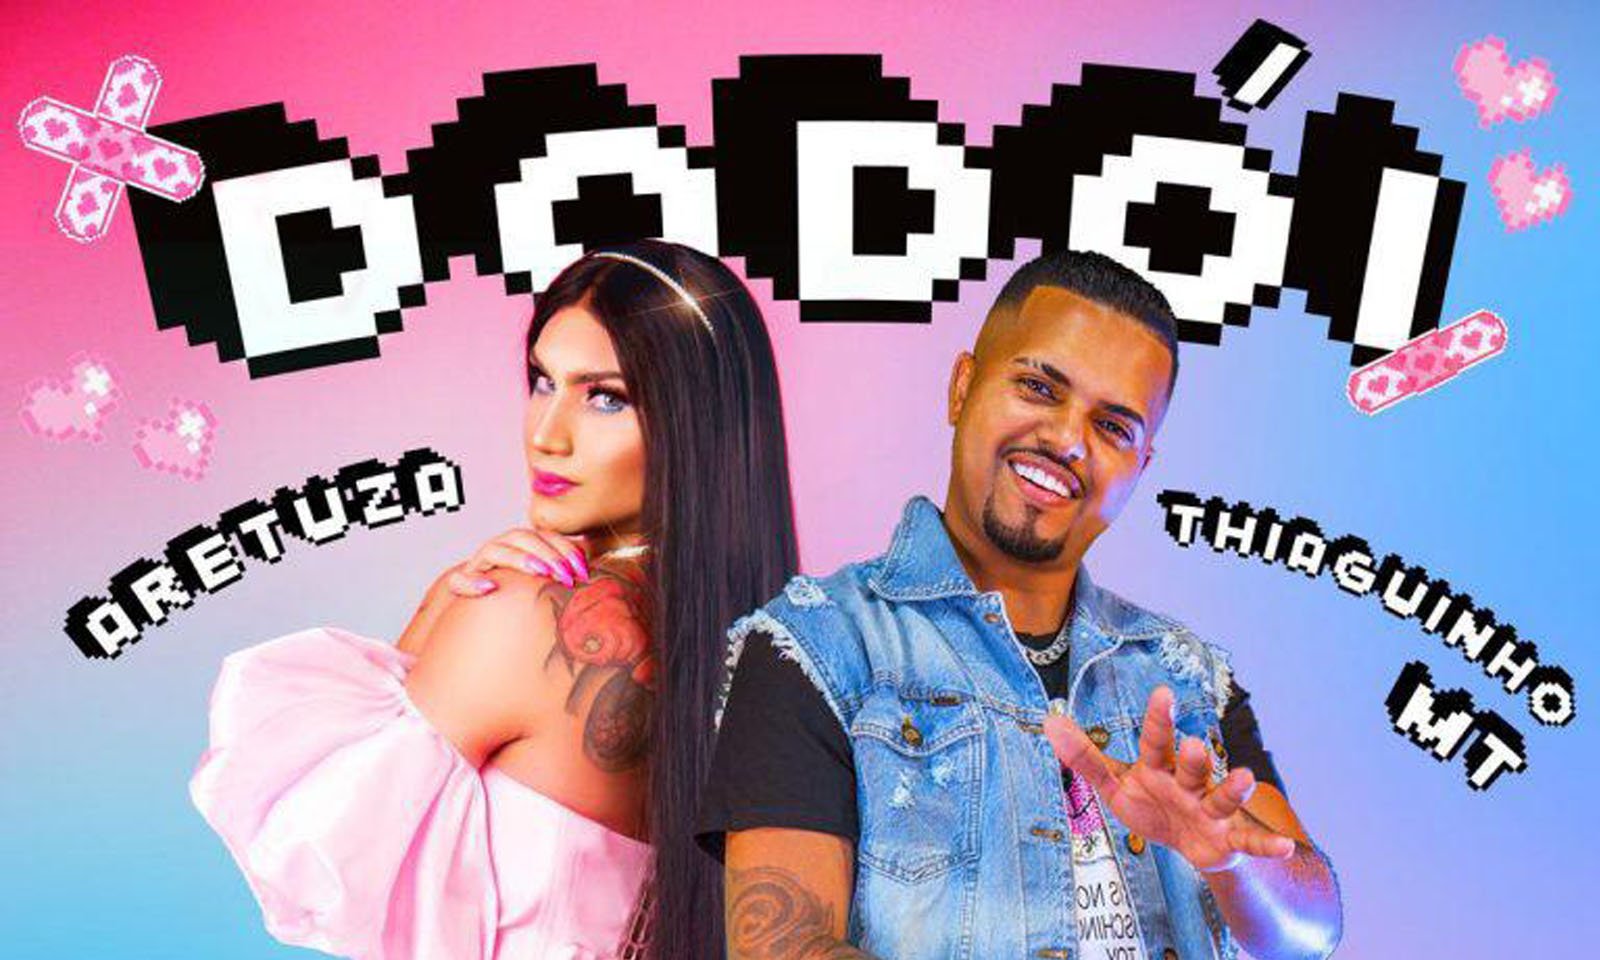 'Dodói': Aretuza Lovi anuncia novo single em parceria com Thiaguinho MT. Veja a capa, data de lançamento e mais!